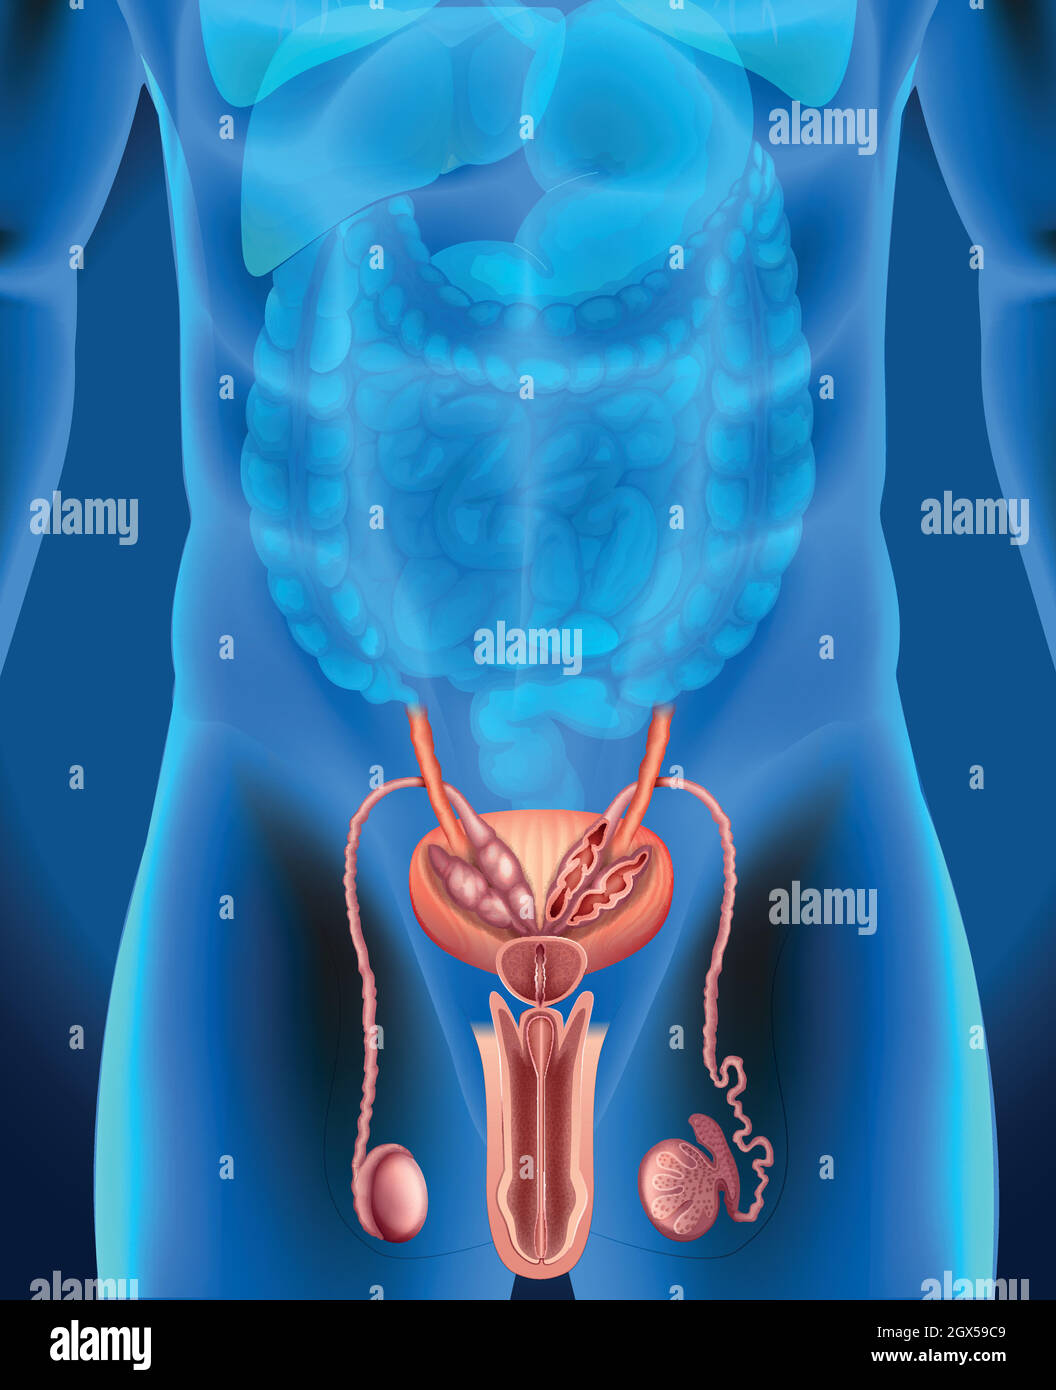 Sistema Genital Masculino En Humanos Imagen Vector De Stock Alamy